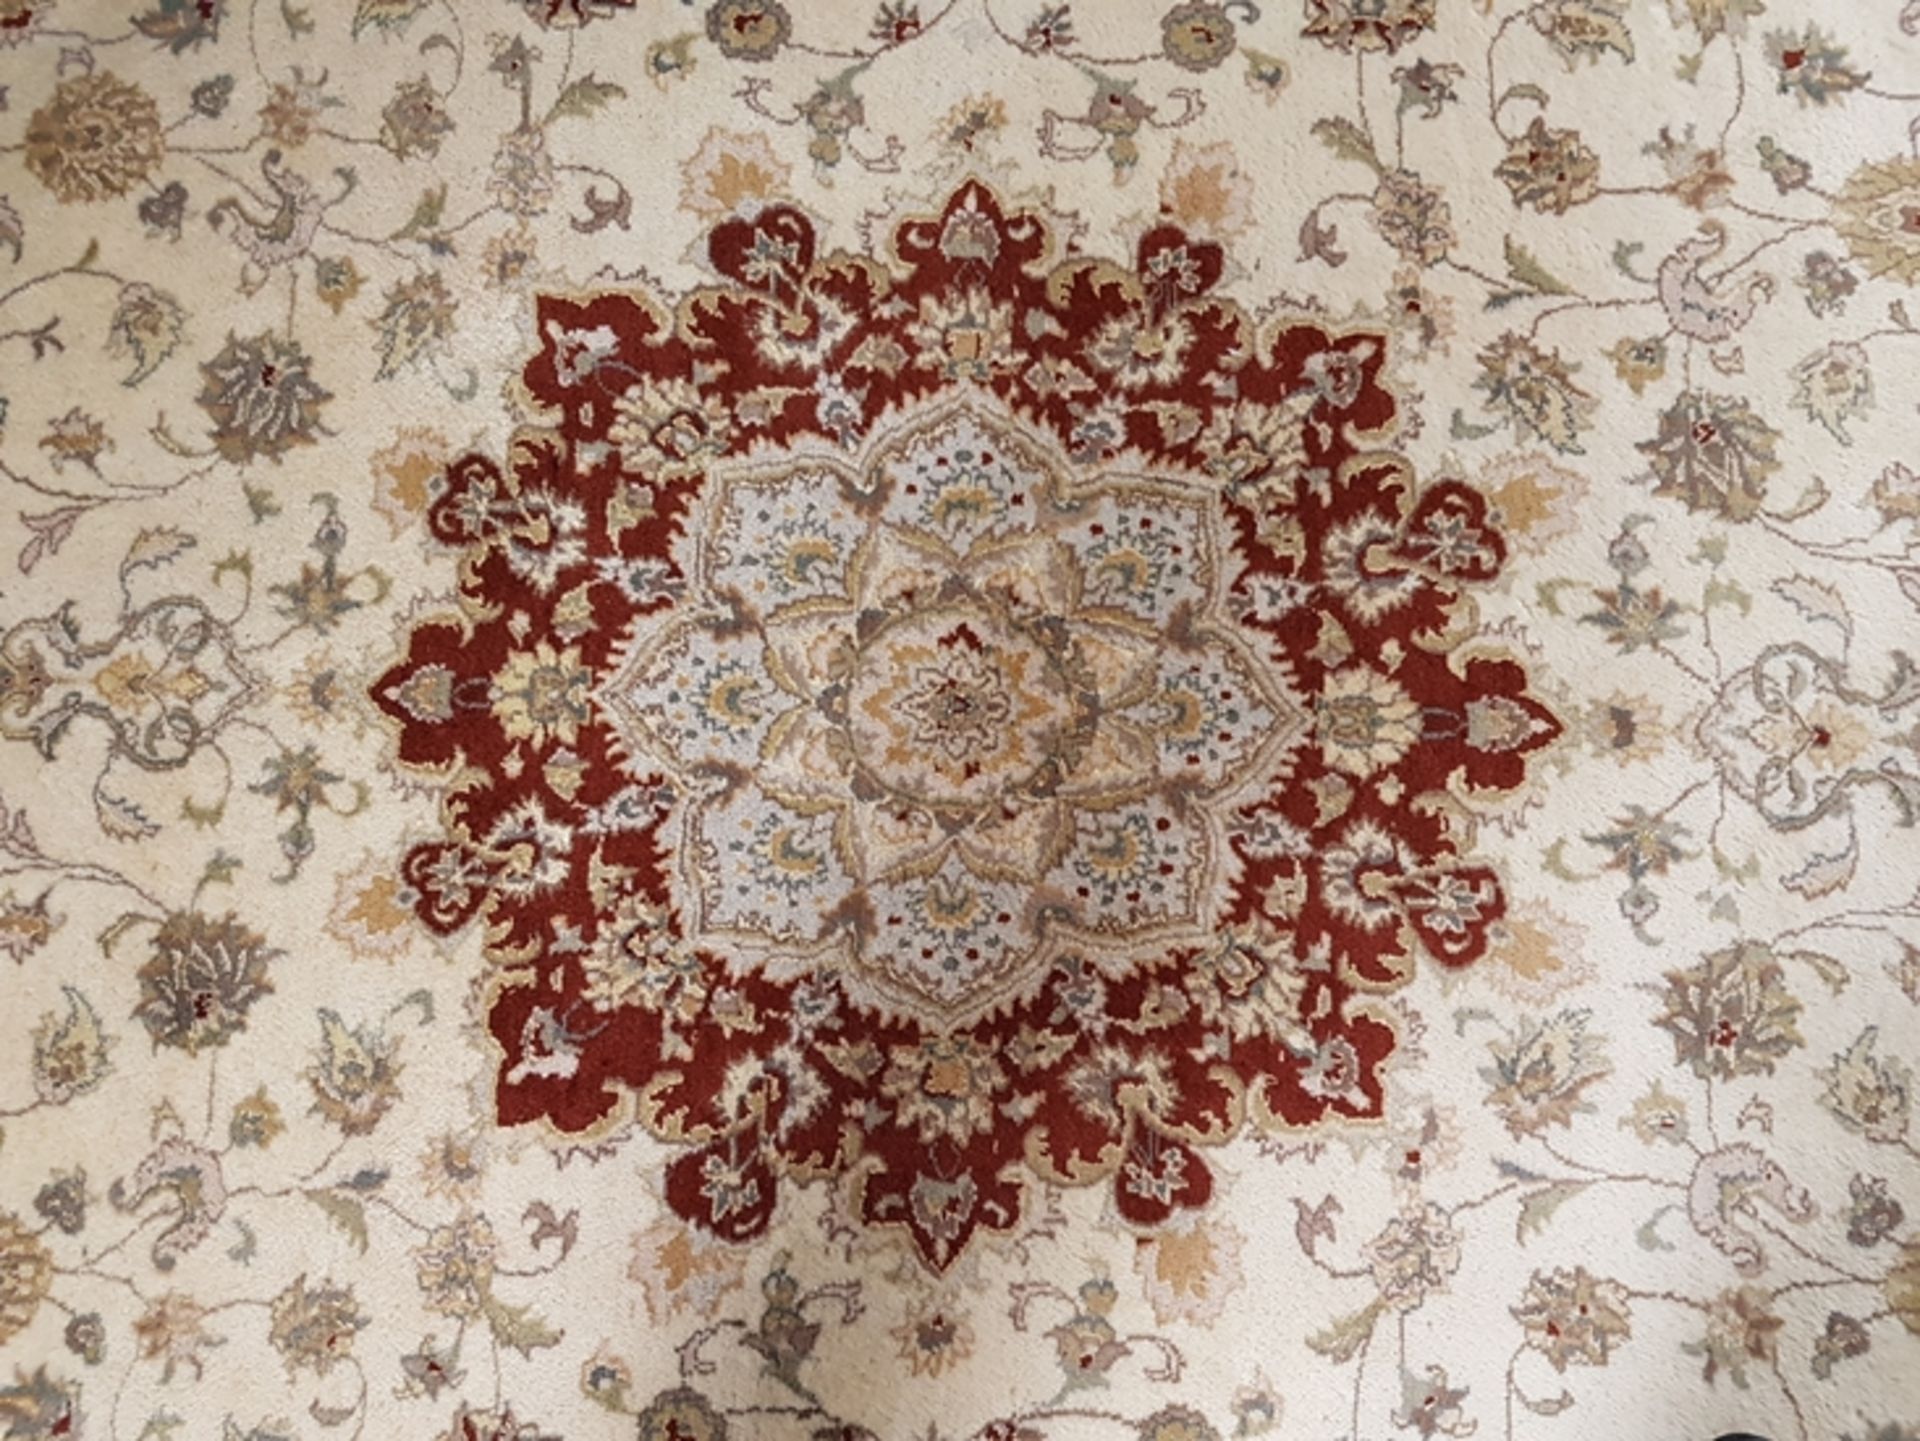 Orientteppich - Kaschmir-Wolle, handgeknüpft, beigegrundig mit roter Bordüre und floralem Muster, c - Bild 2 aus 4